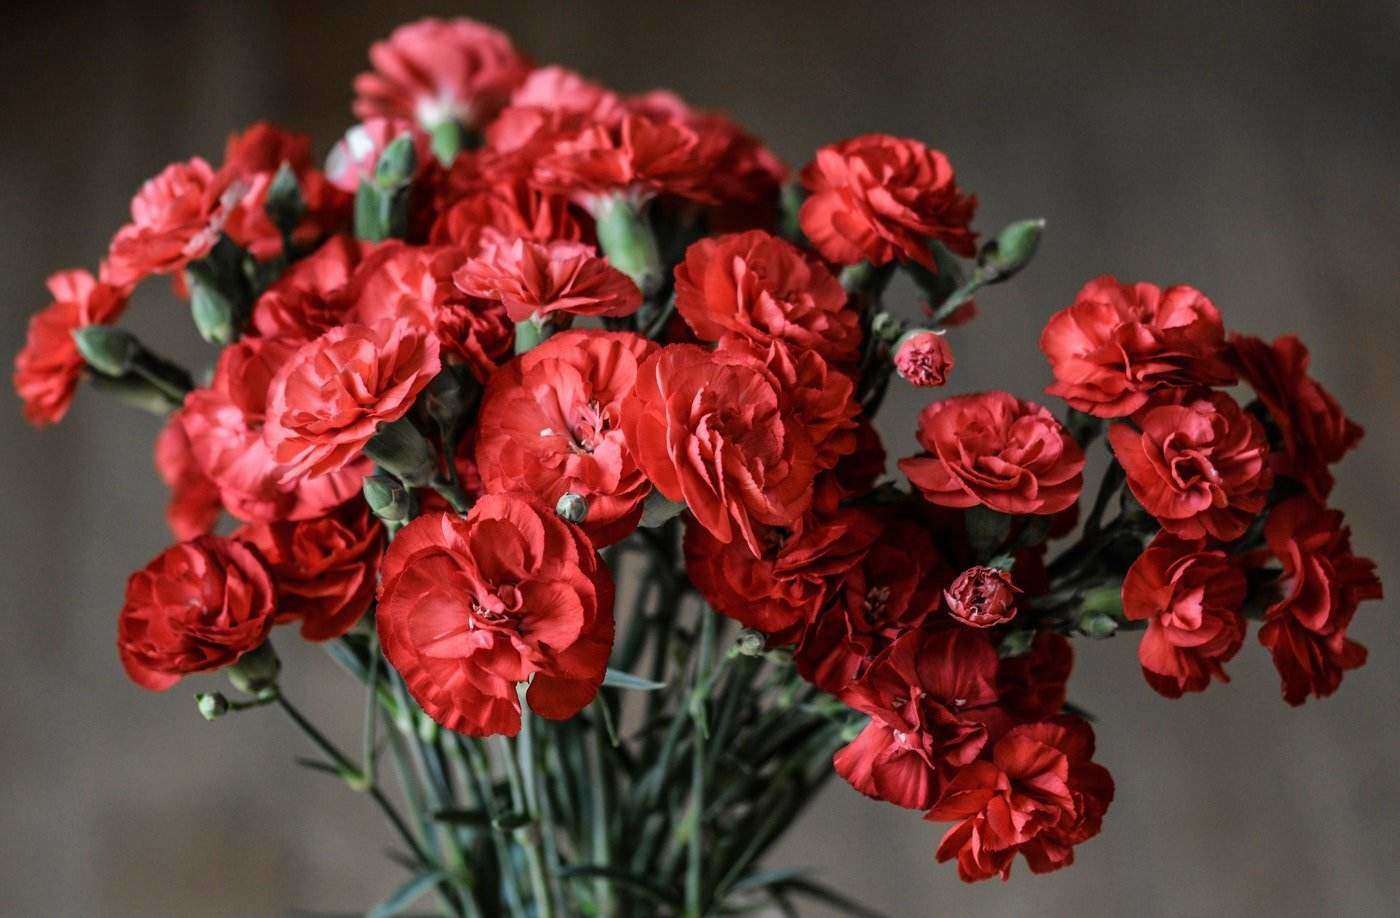 garofani rossi in vaso - 20 fiori più popolari